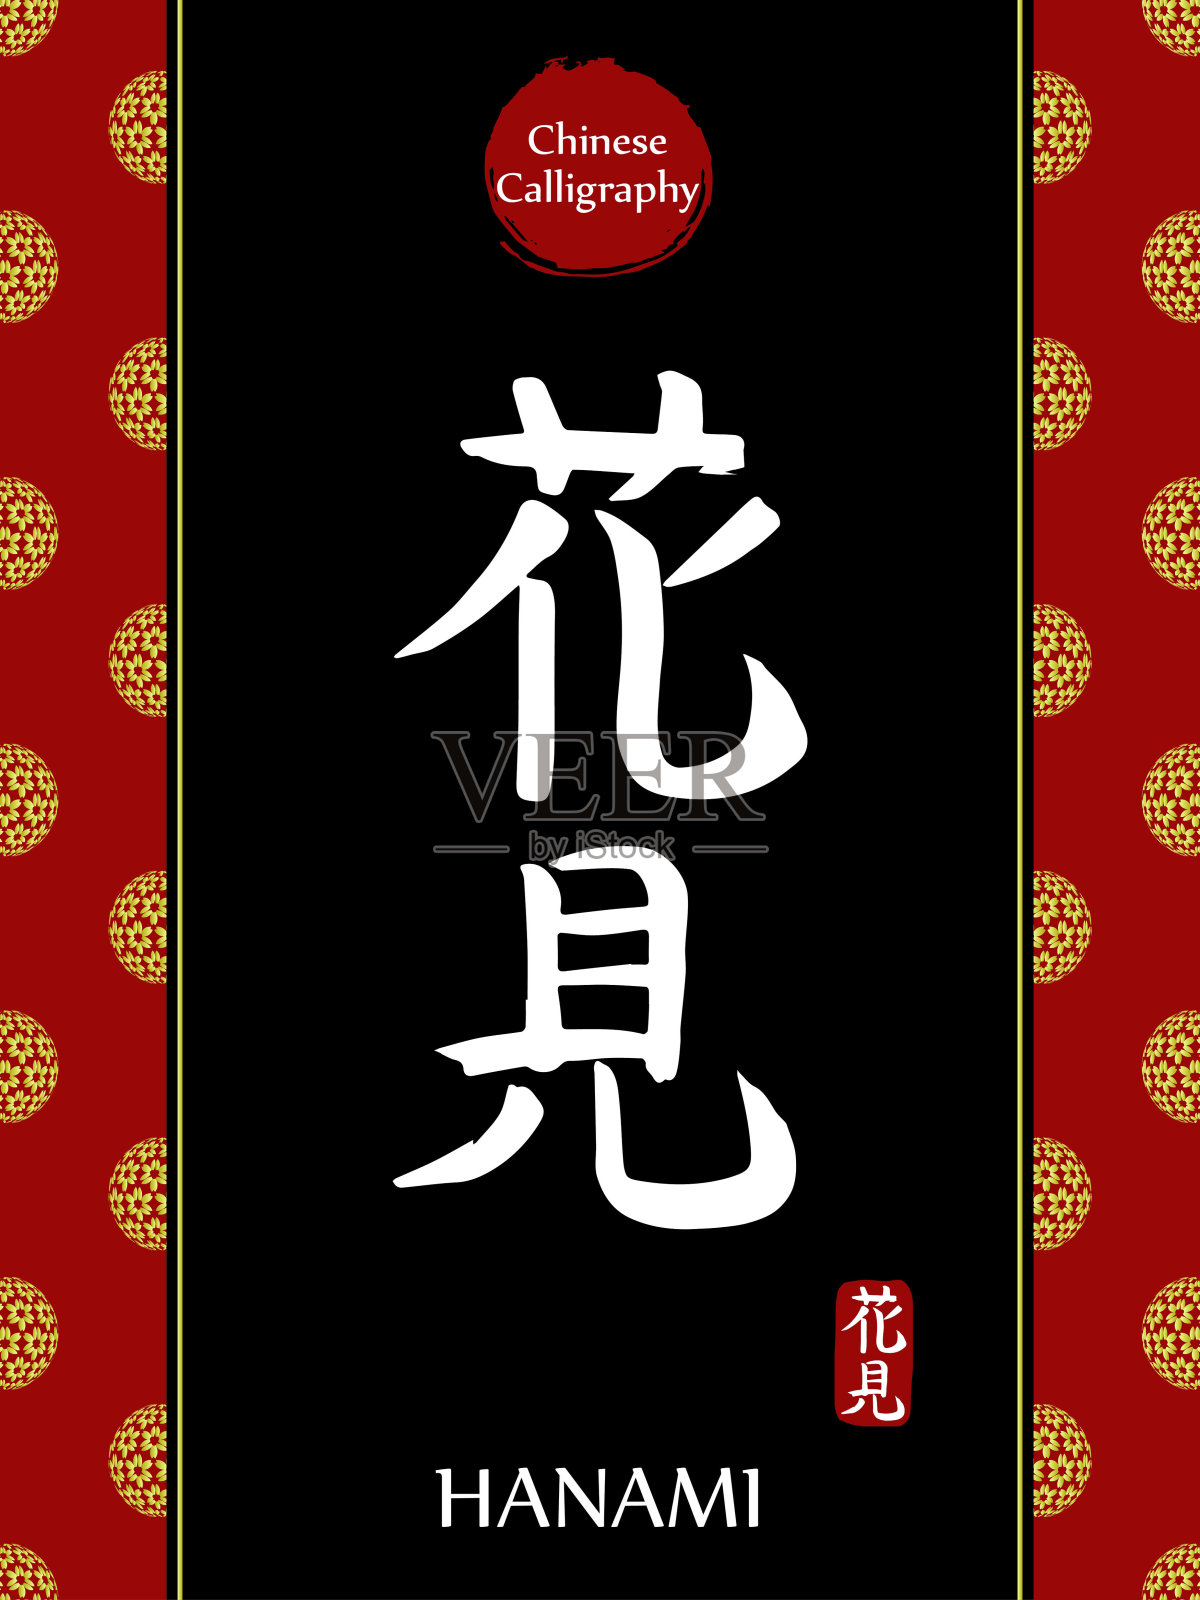 中国书法象形文字的翻译:花见。亚洲金花球农历新年图案。向量中国符号在黑色背景。手绘图画文字。毛笔书法插画图片素材